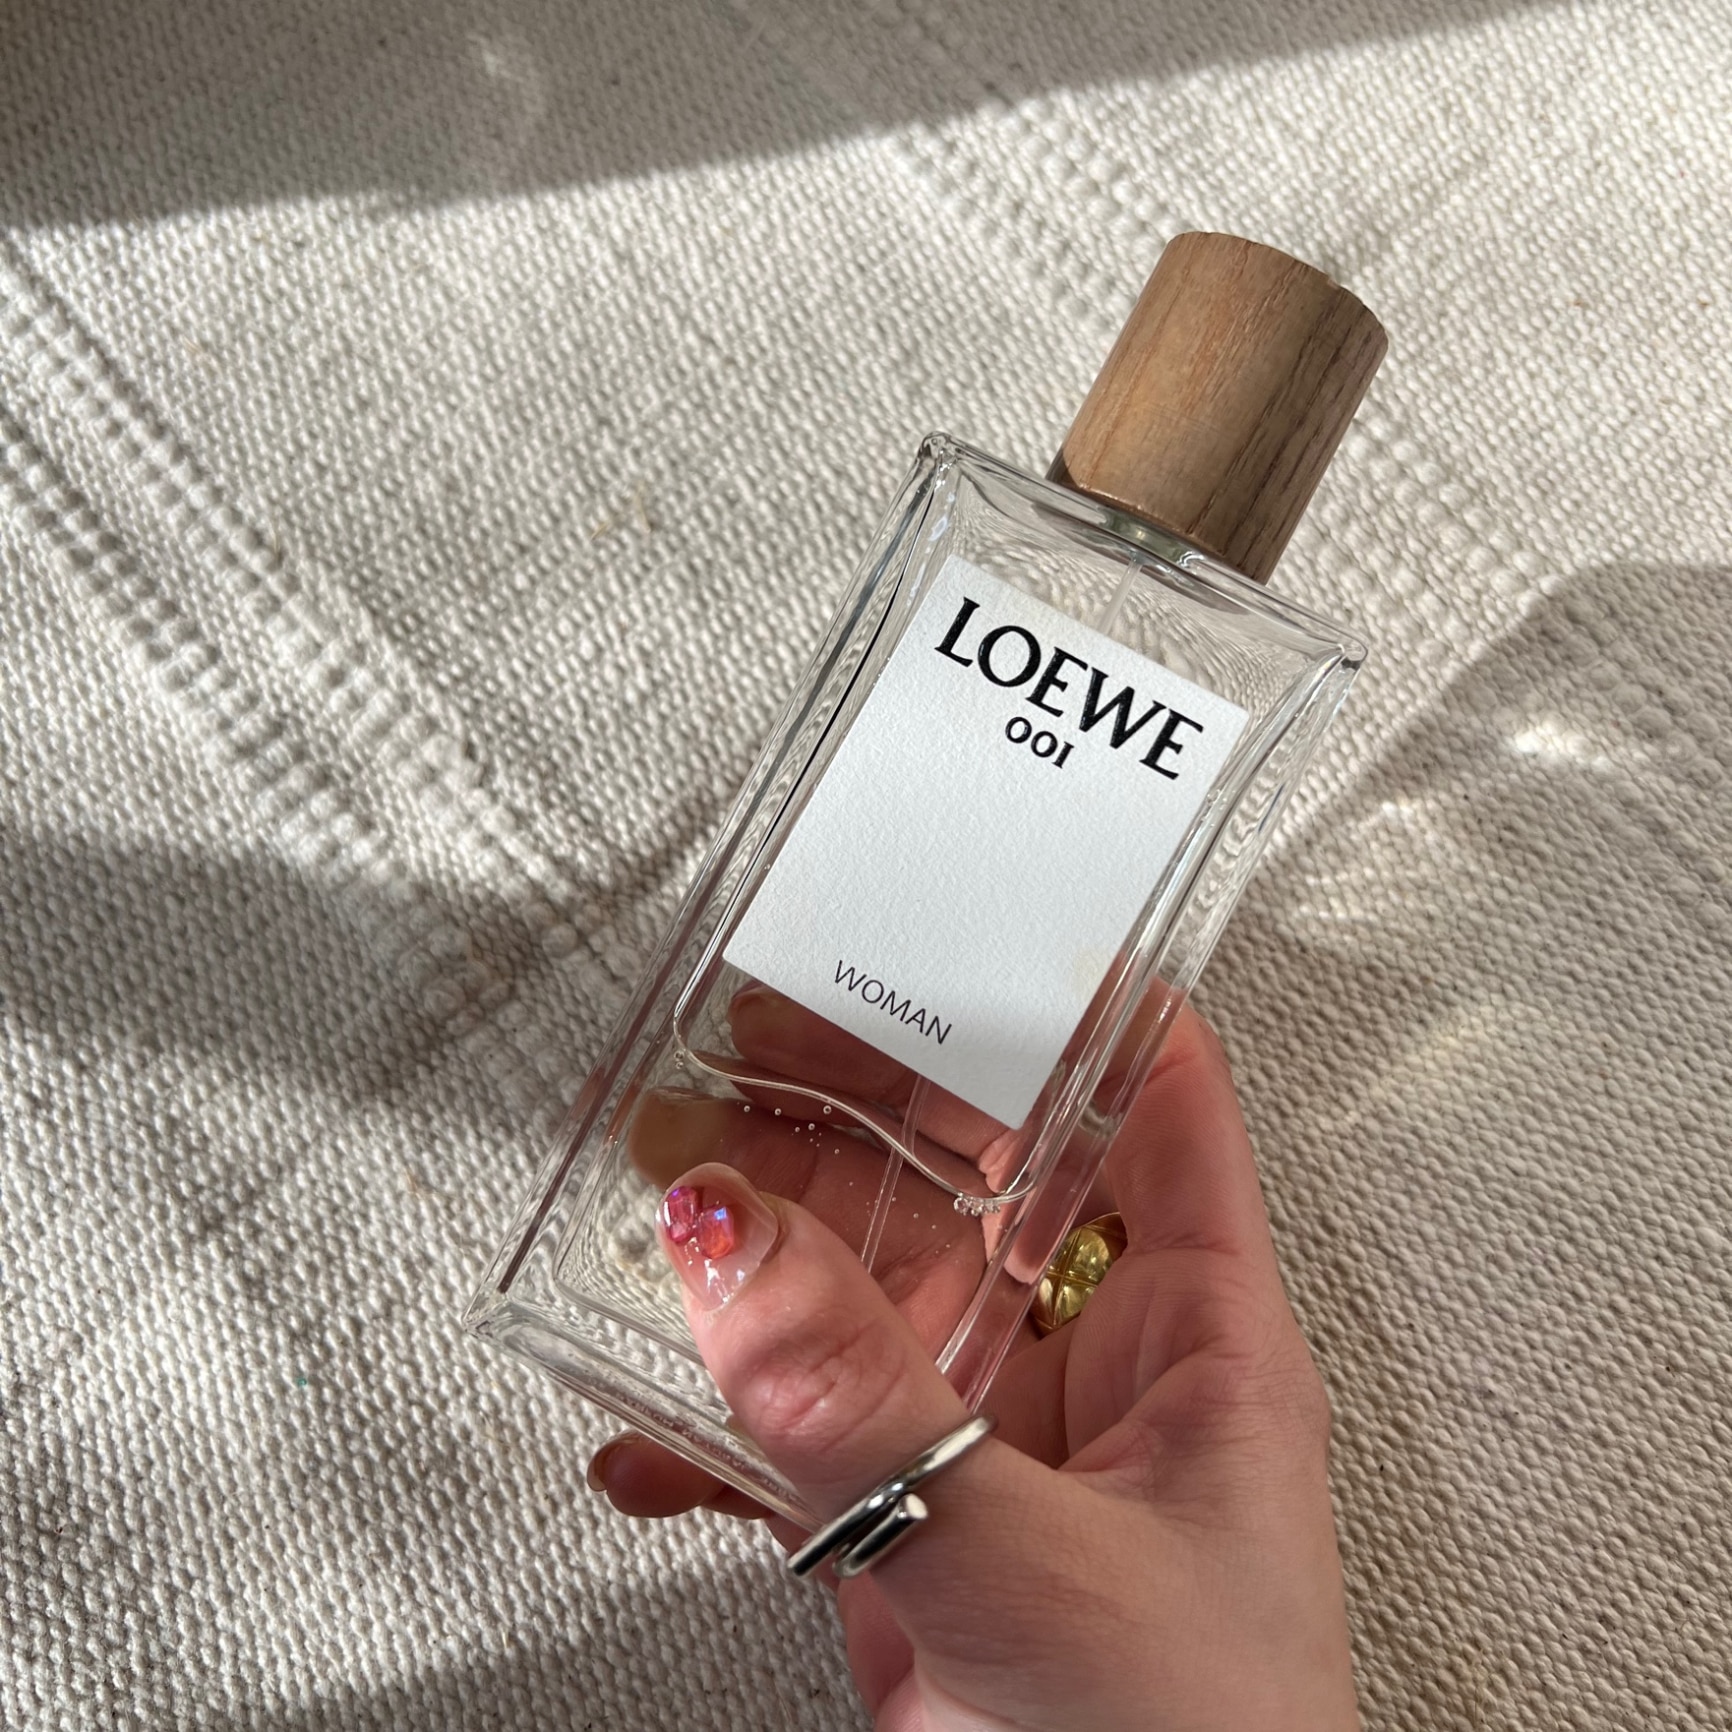 LOEWE(ロエベ) 001woman オードゥバルファン 100ml - 香水(女性用)